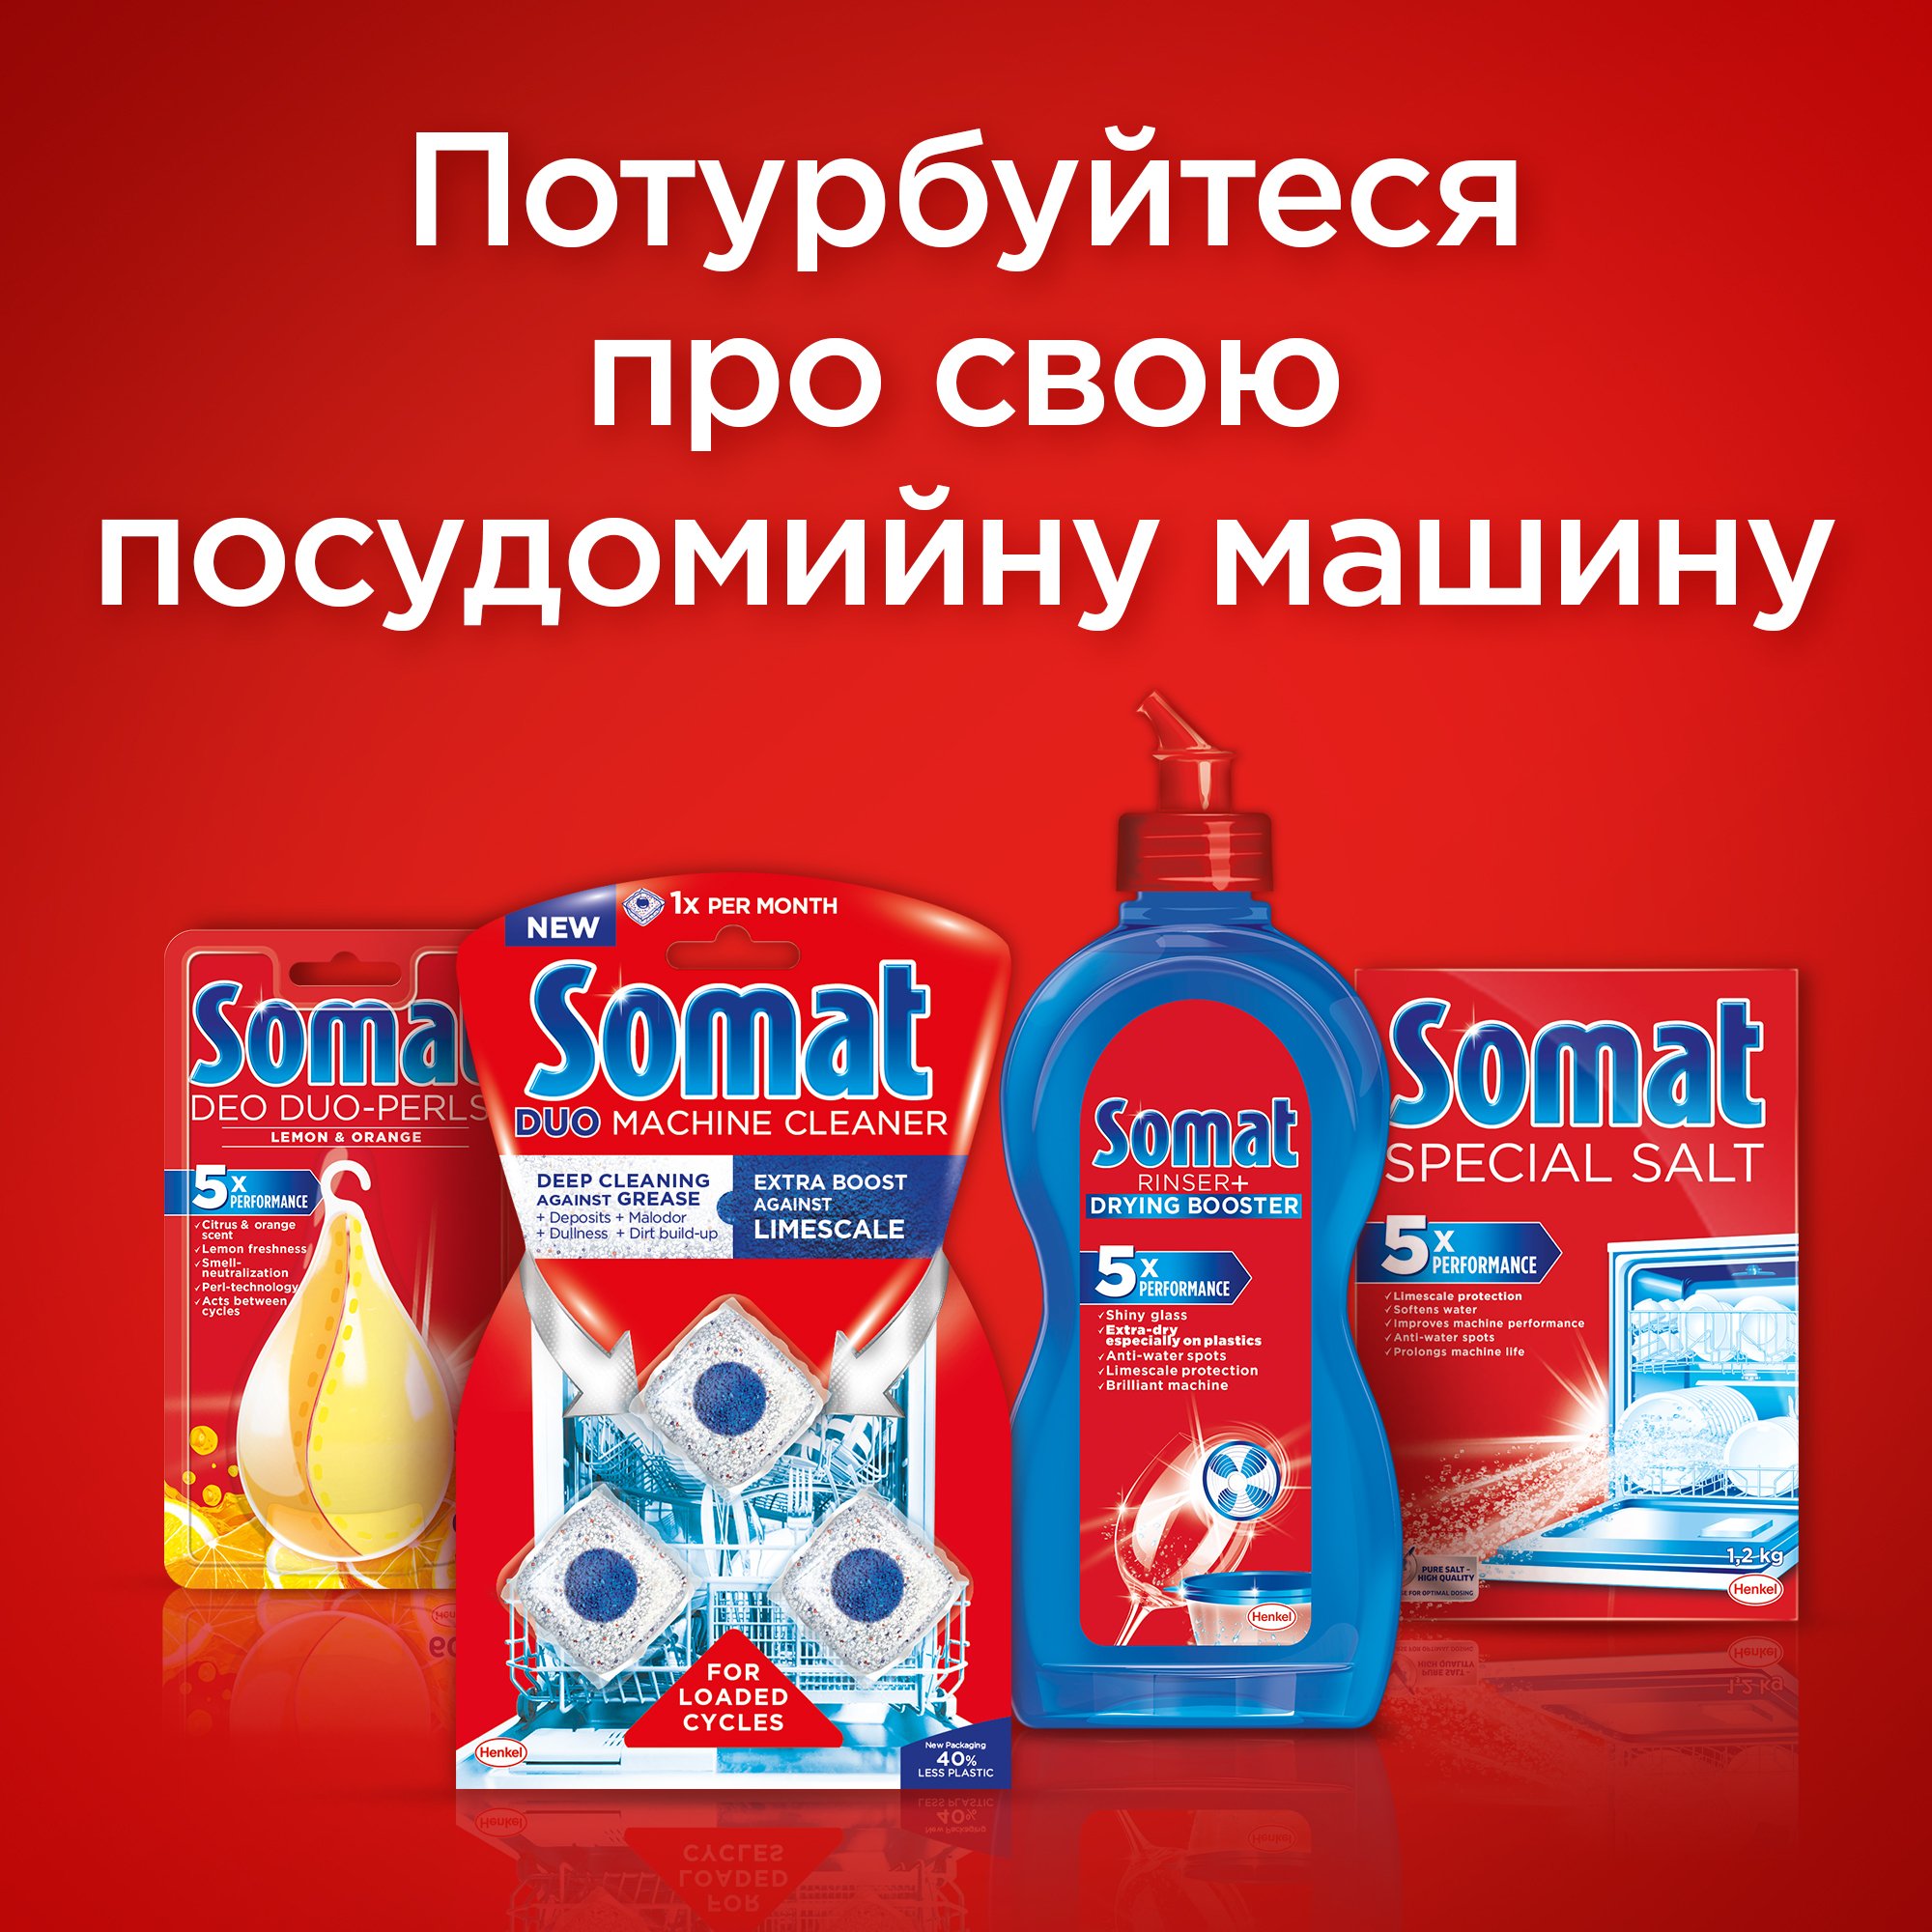 Таблетки для посудомоечной машины Somat All in one набор 2*24шт фото 11